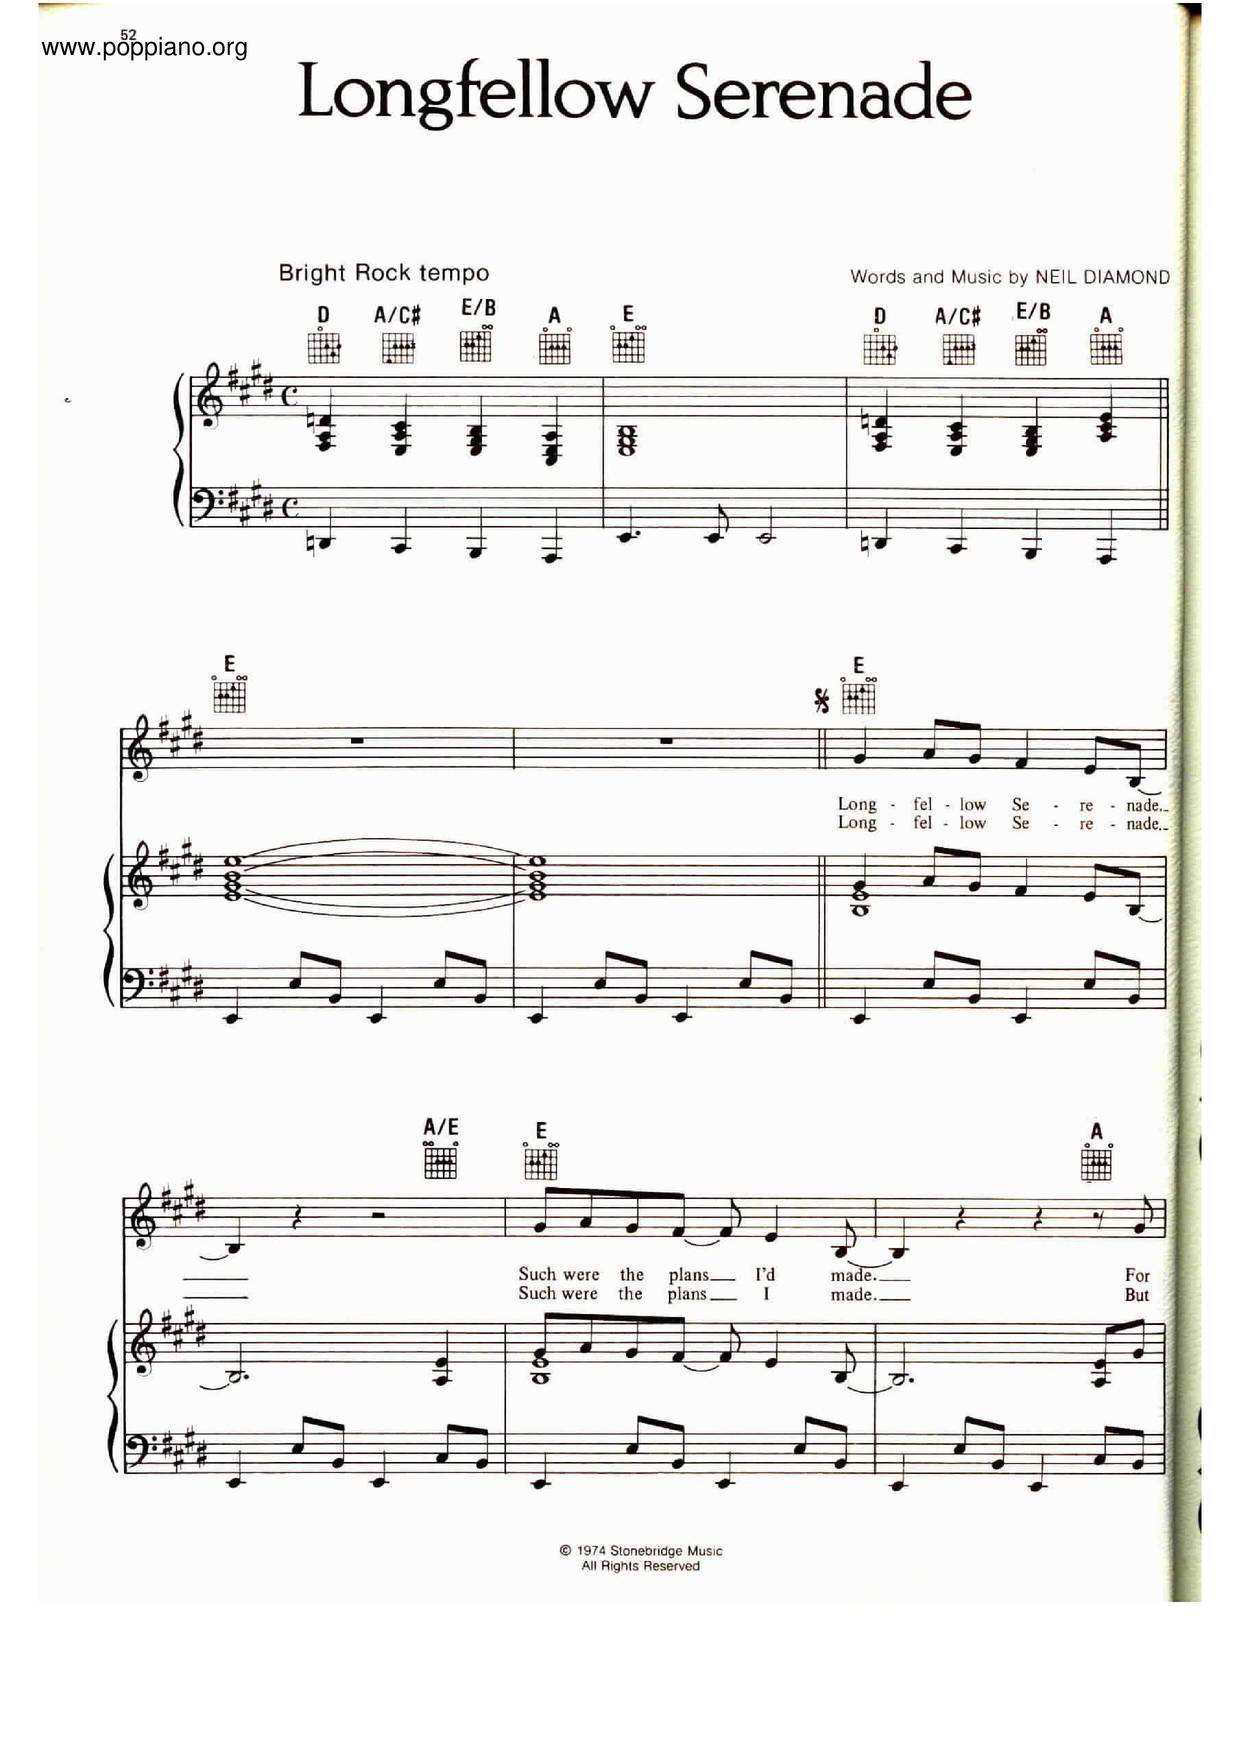 Longfellow Serenade Score